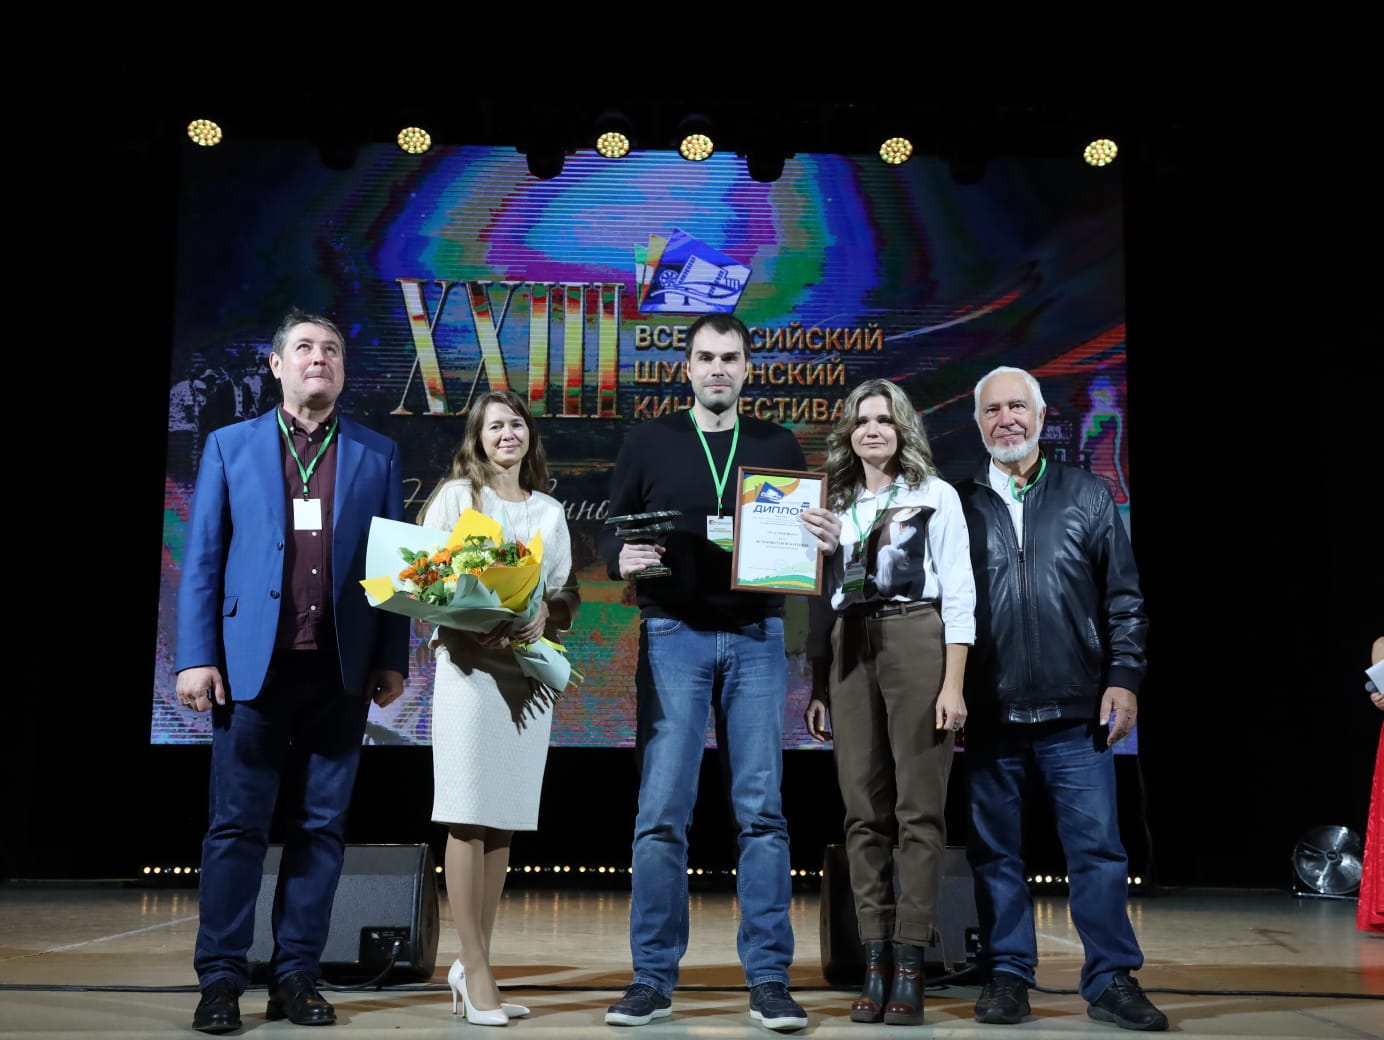 Объявлены призёры Всероссийского Шукшинского кинофестиваля